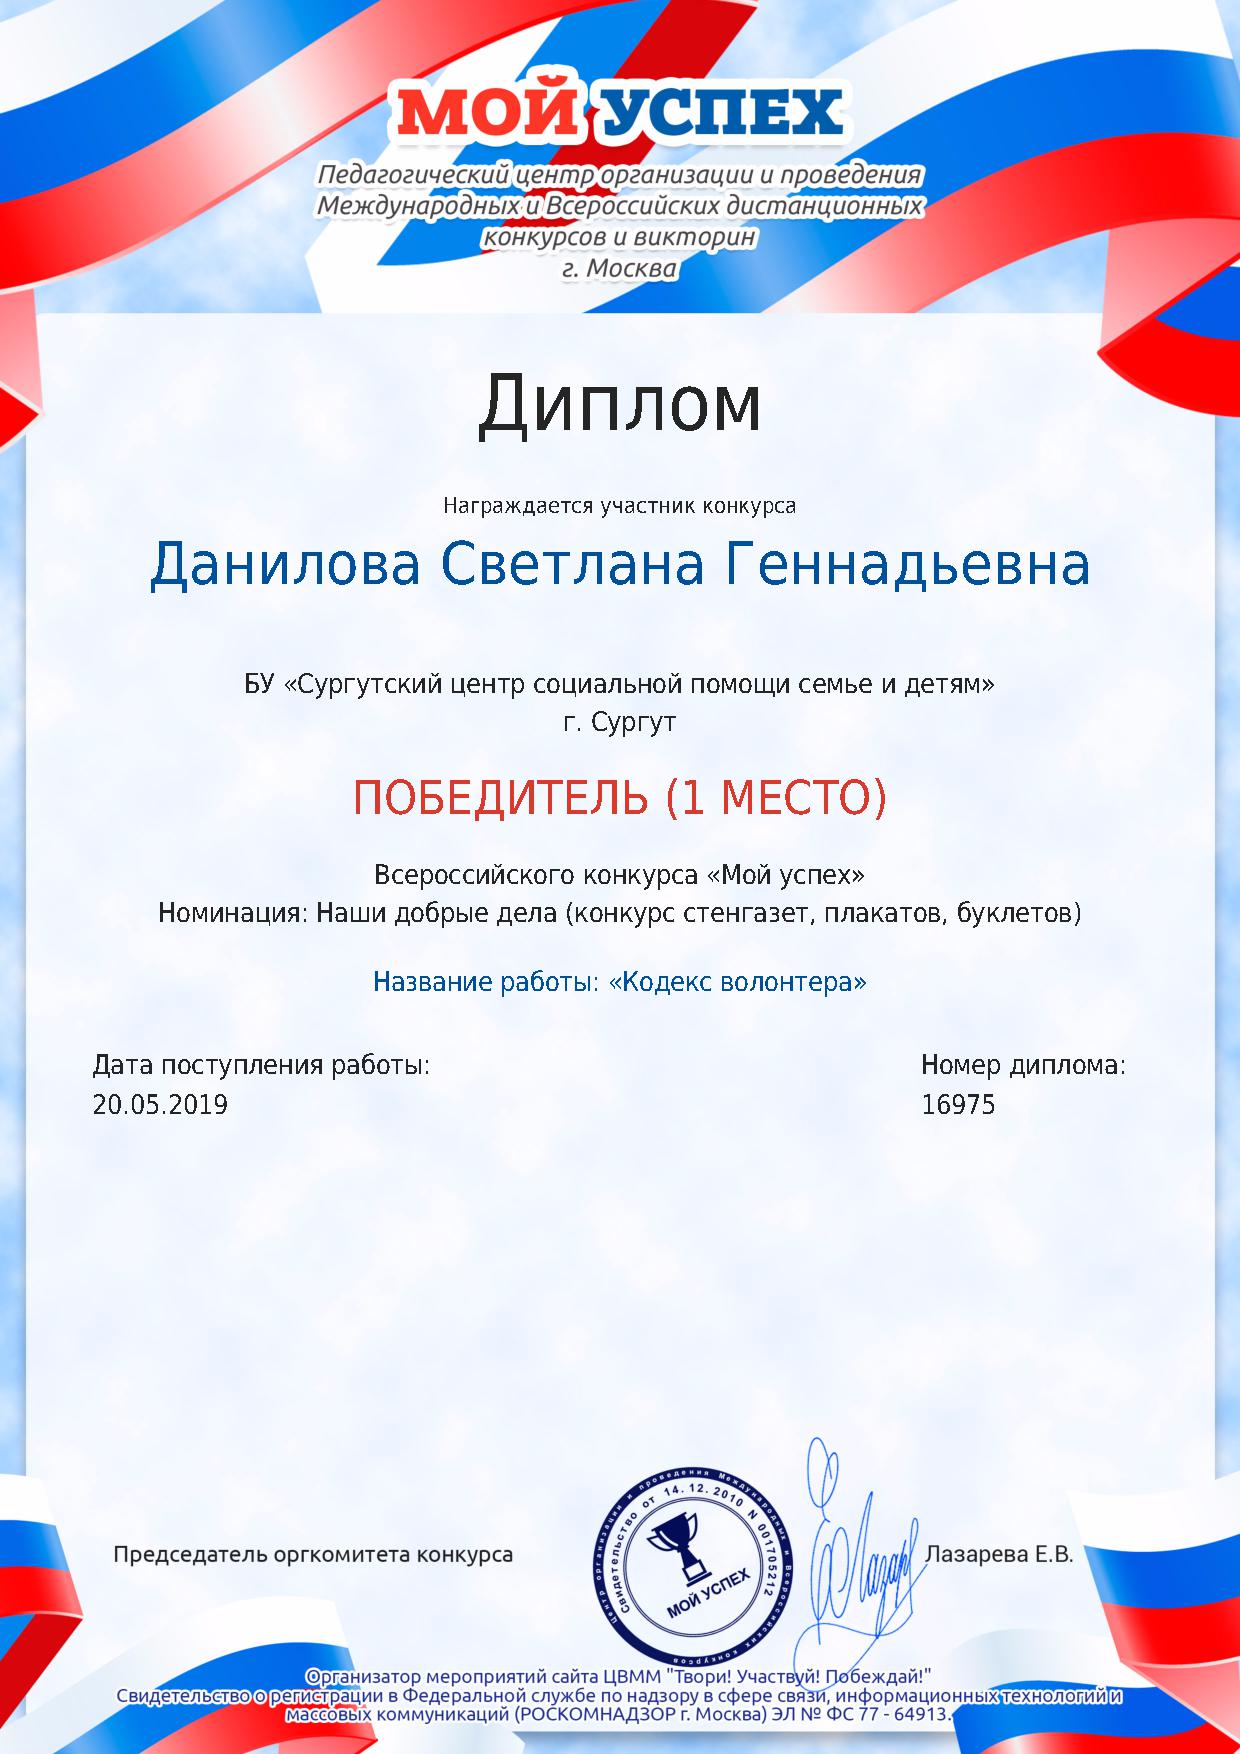 Диплом победителя (1 место) Всероссийского конкурса «Мой успех», Москва 2019